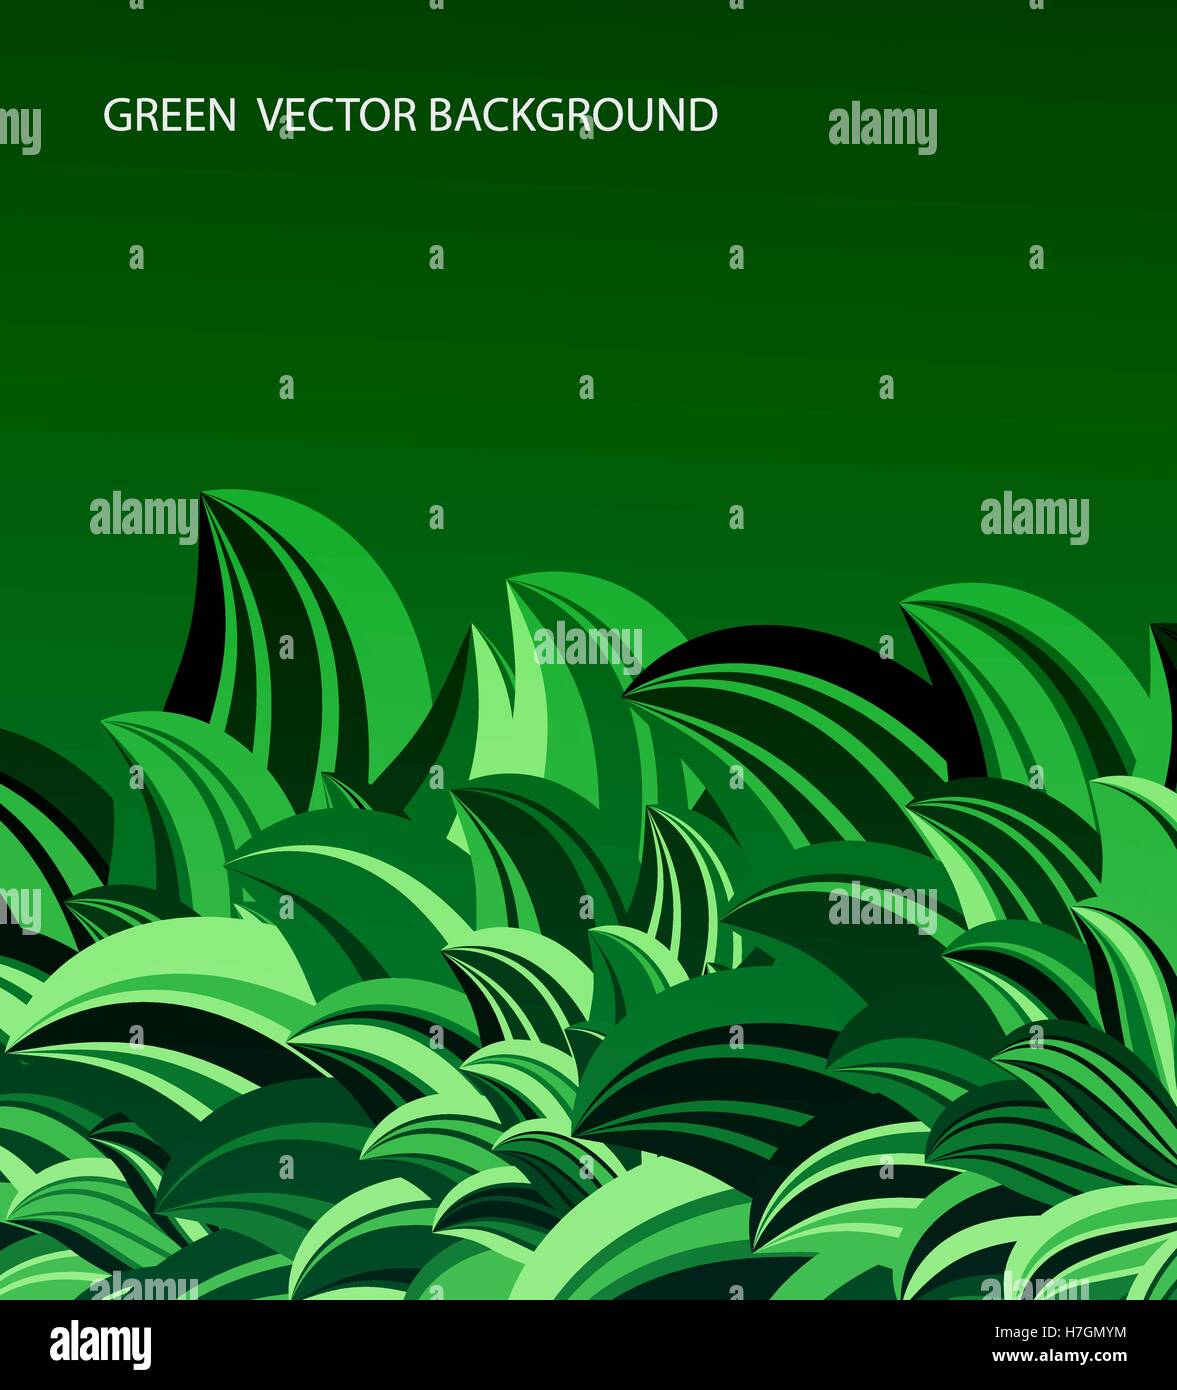 grüne Blätter abstrakten Hintergrund Vektorgrafik Stock Vektor